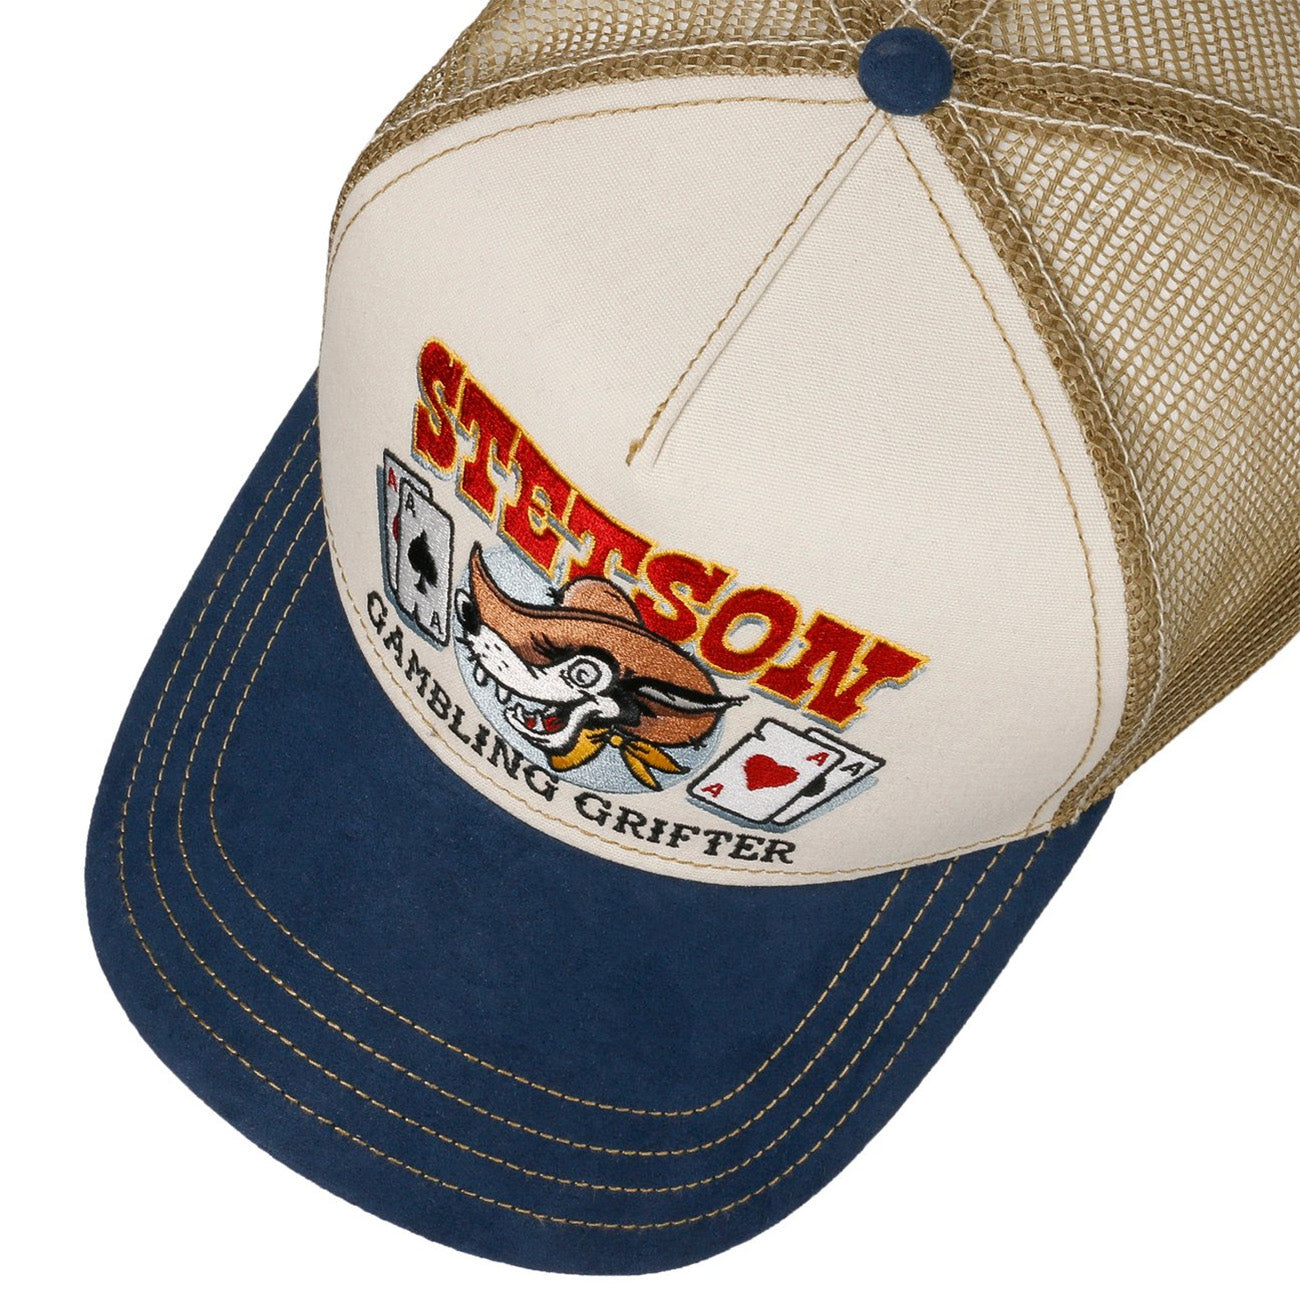 Stetson Gambling Grifter Trucker Cap - Denim/Sand